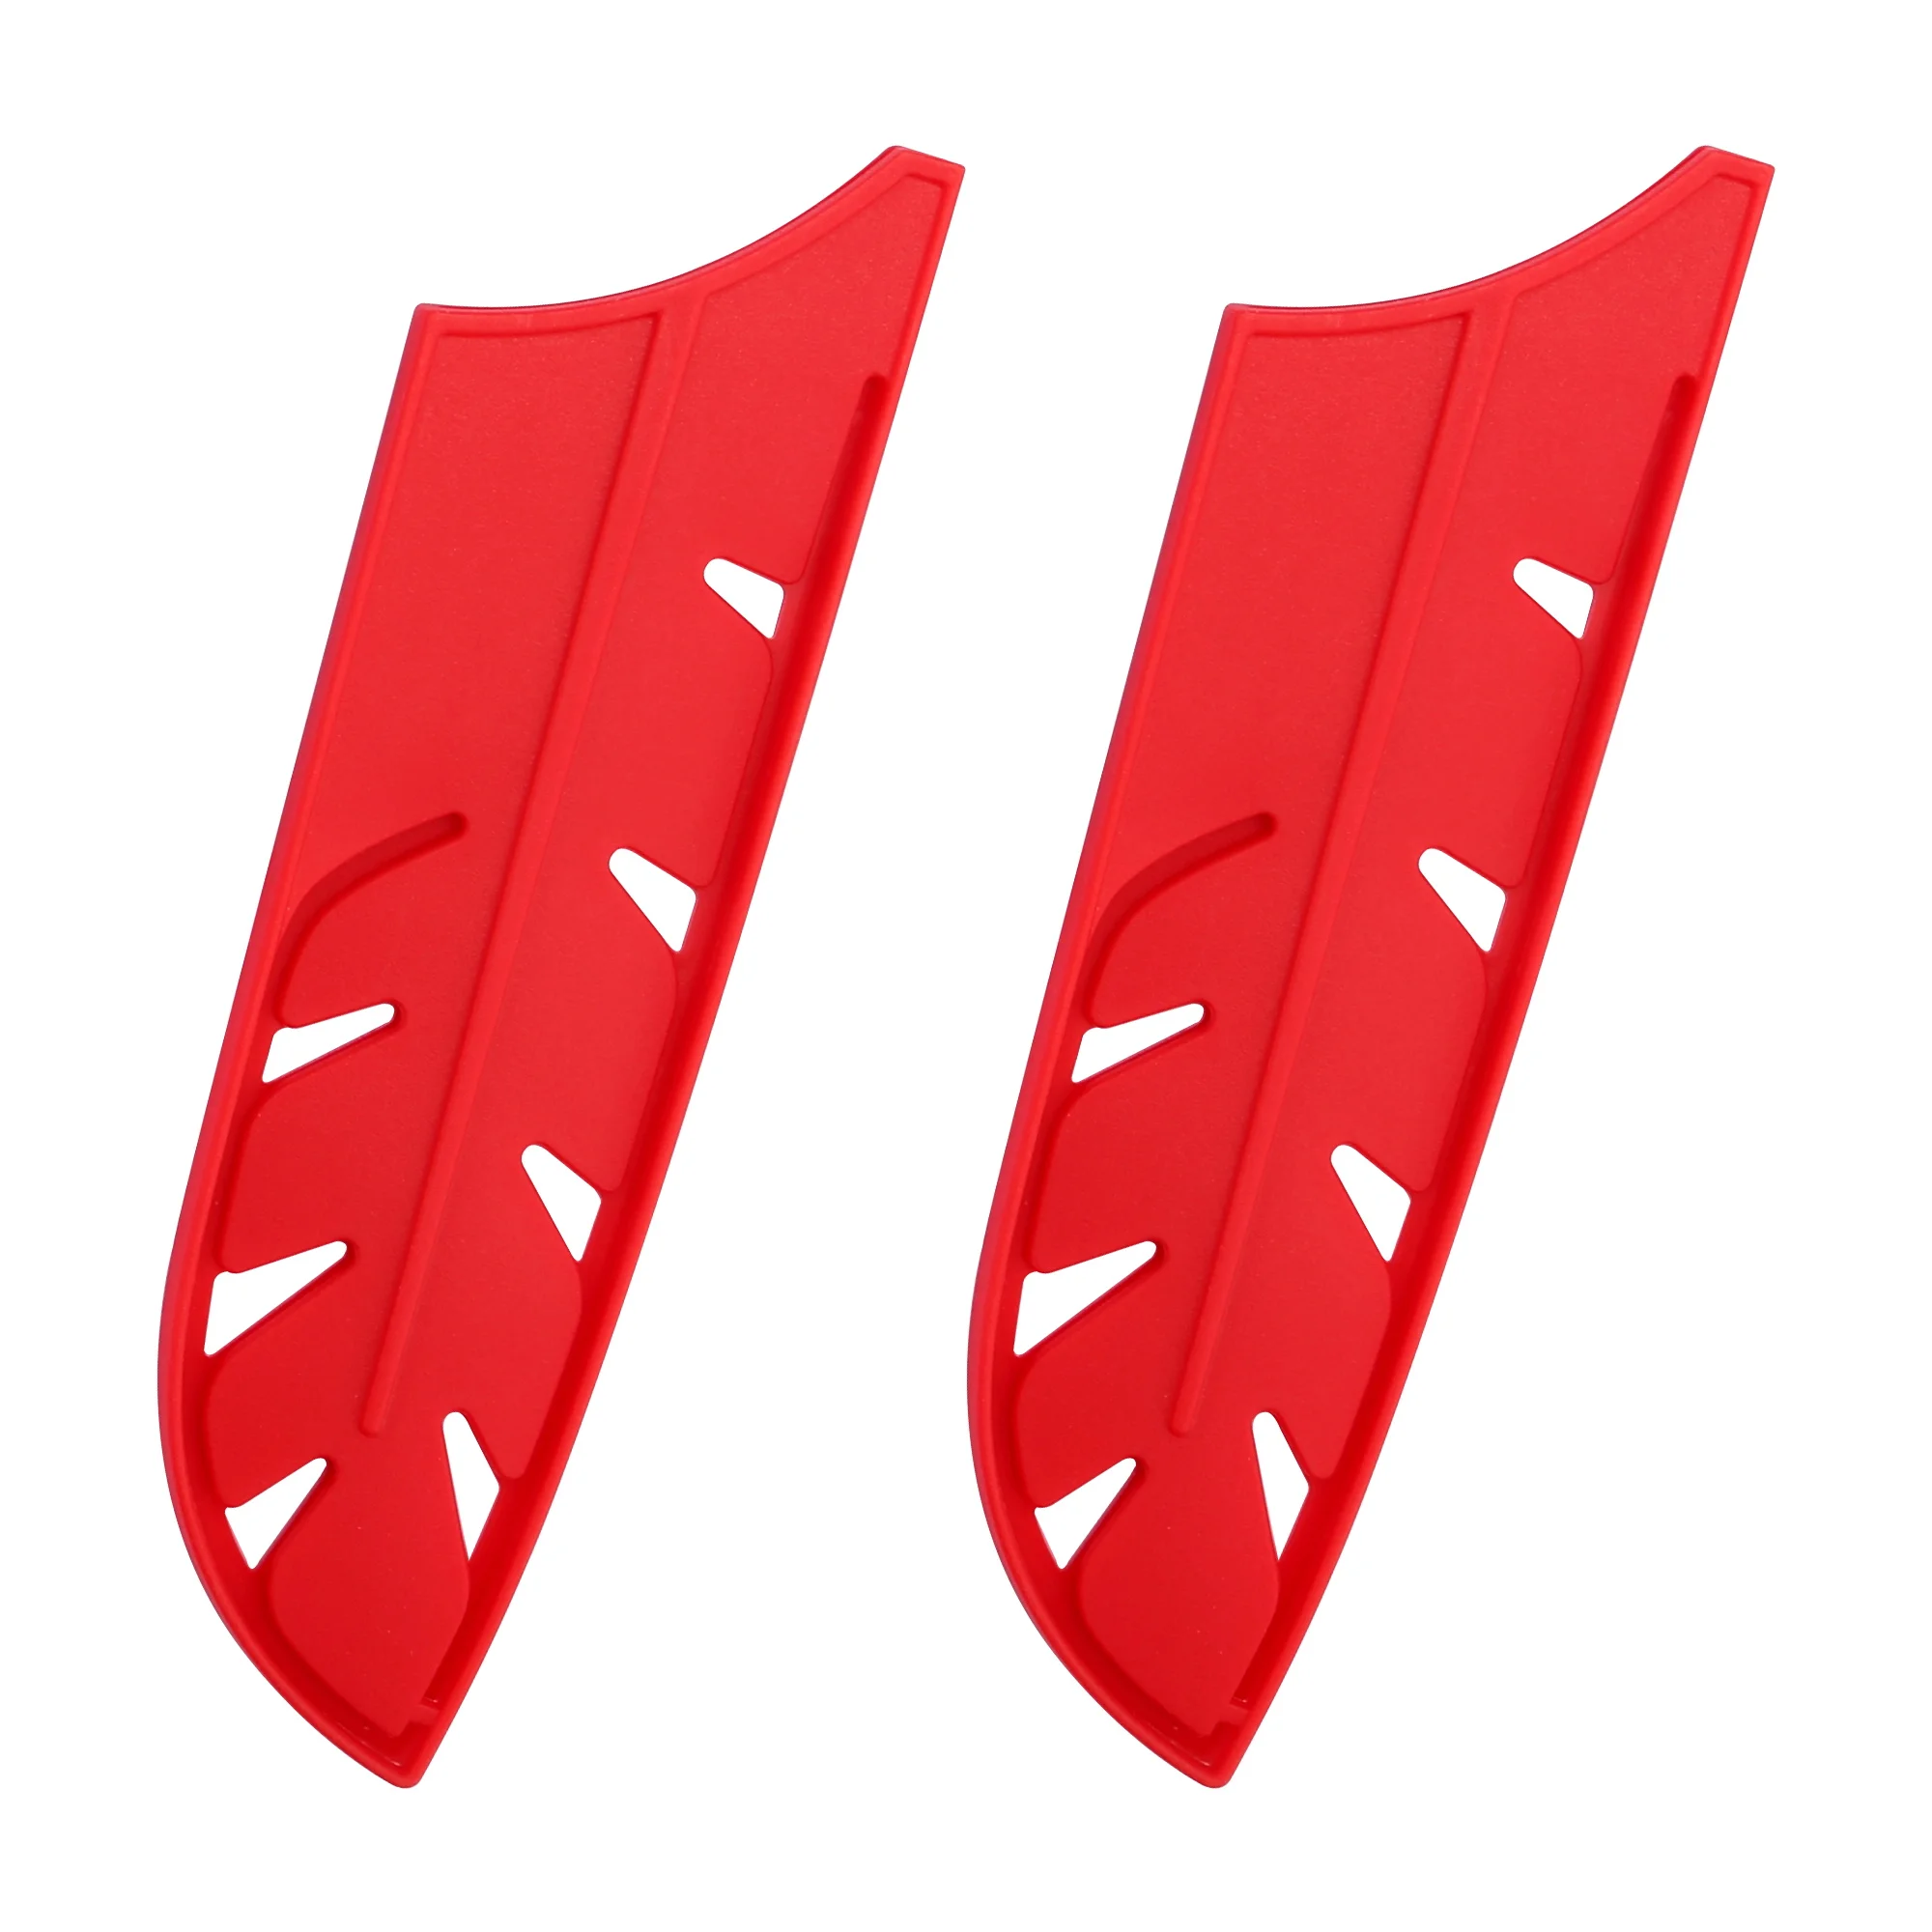 

XYJ 7-дюймовый чехол для ножа сантоку, Красная оболочка, полипропиленовый пластик, 2 шт., аксессуары для ножей